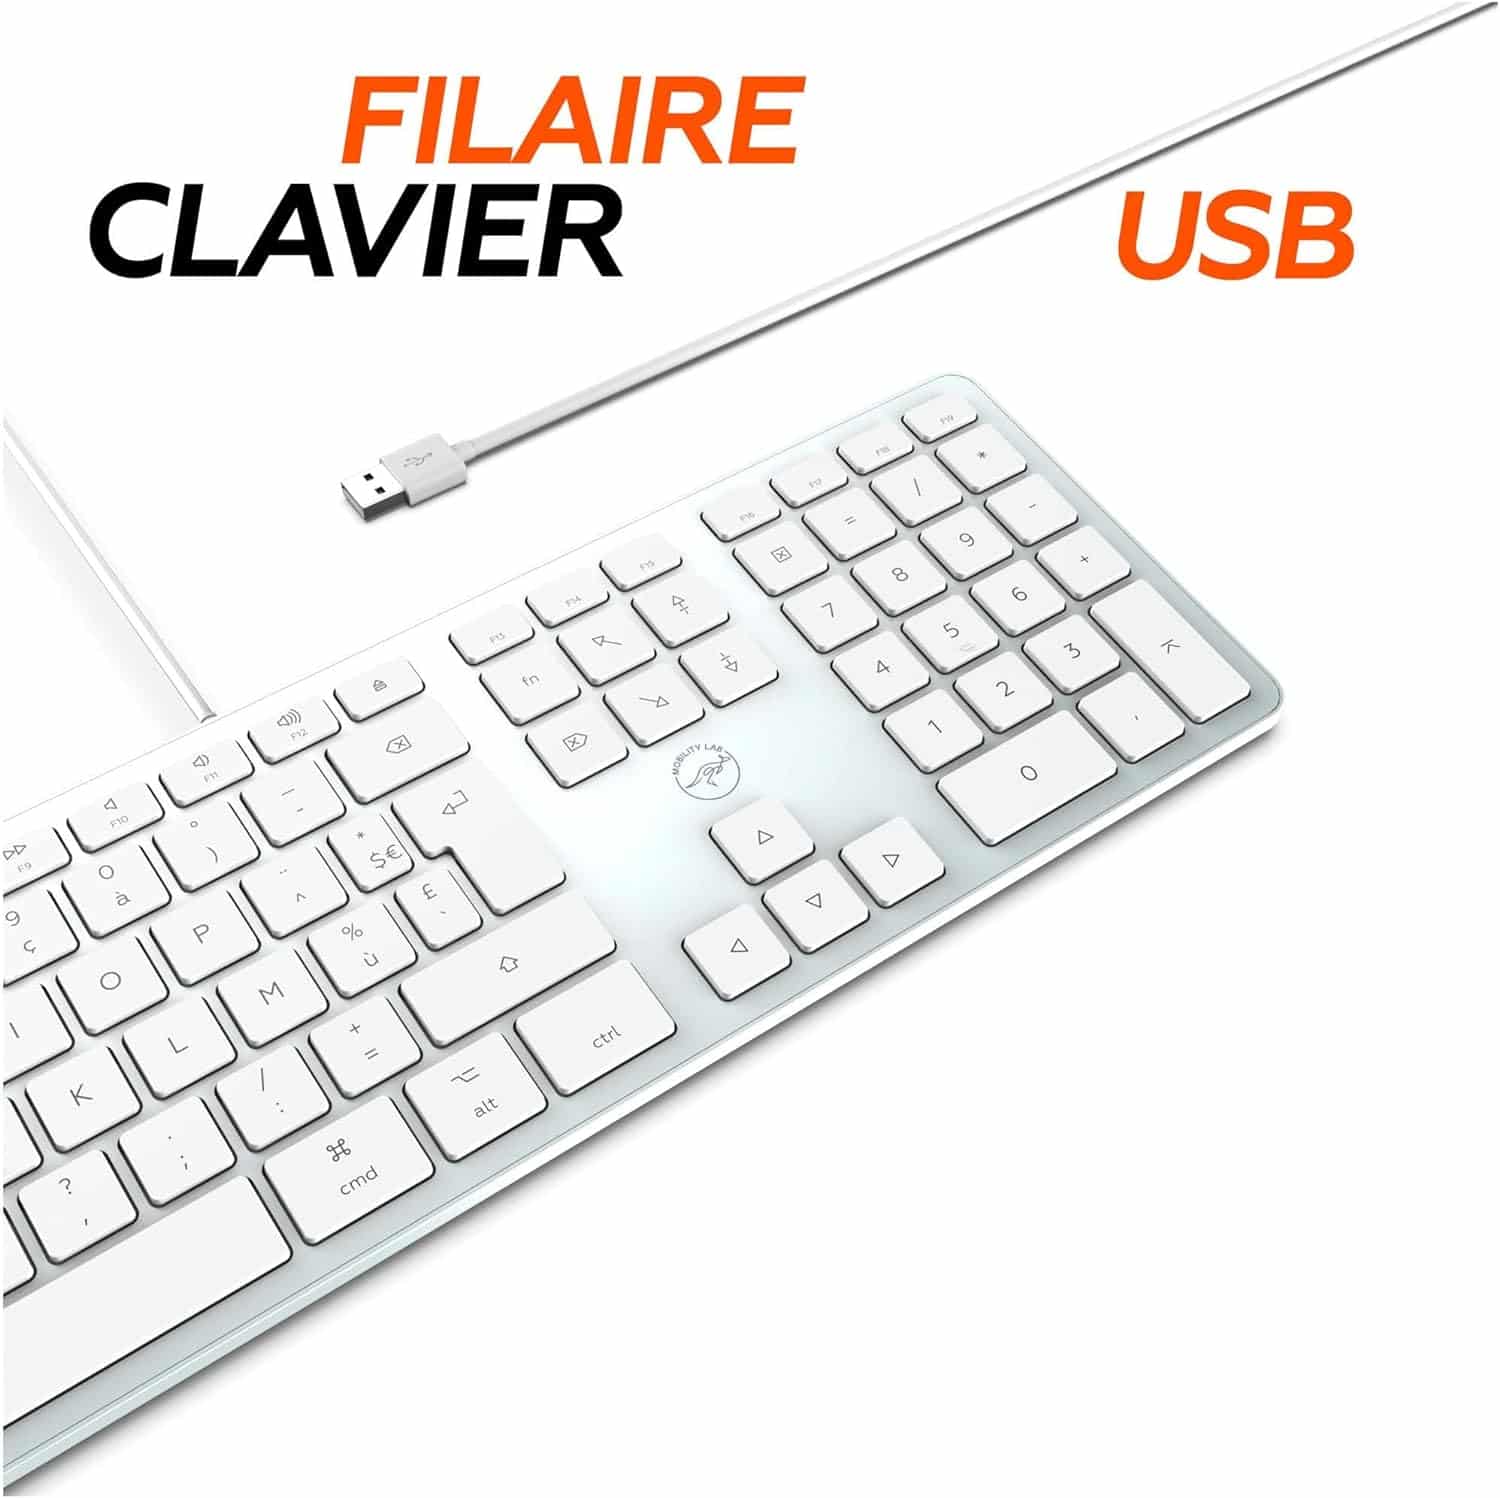 Clavier filaire dédié iMac